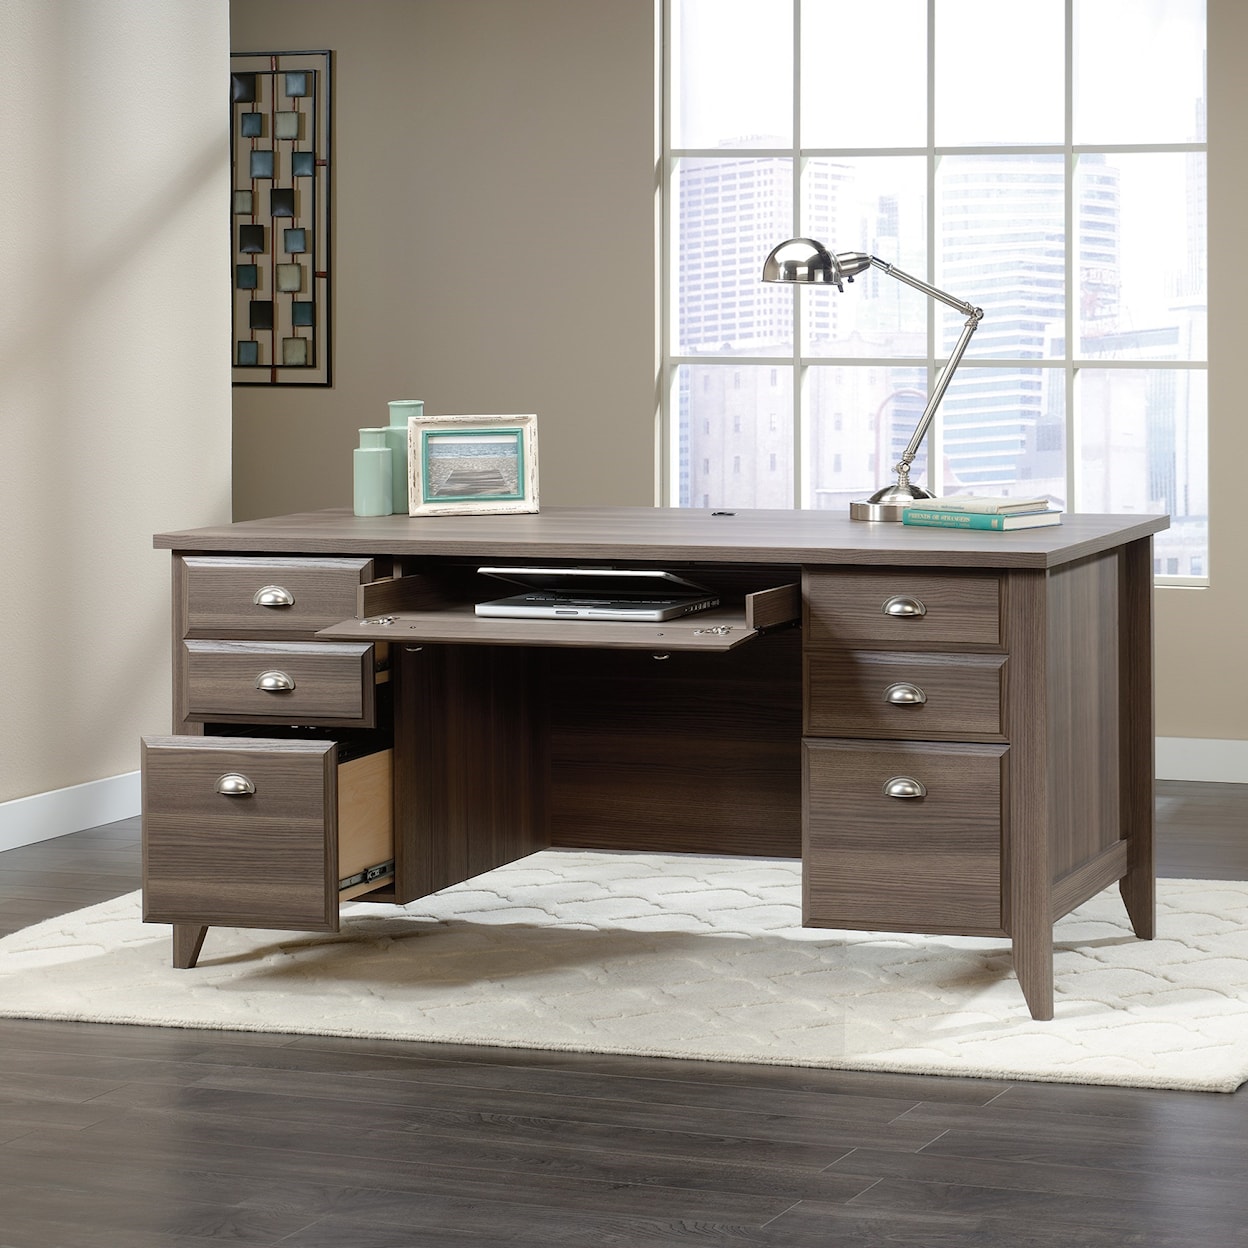 Sauder Shoal Creek 418656 Executive Office Desk | Westrich Furniture &  Appliances | Double Pedestal Desks